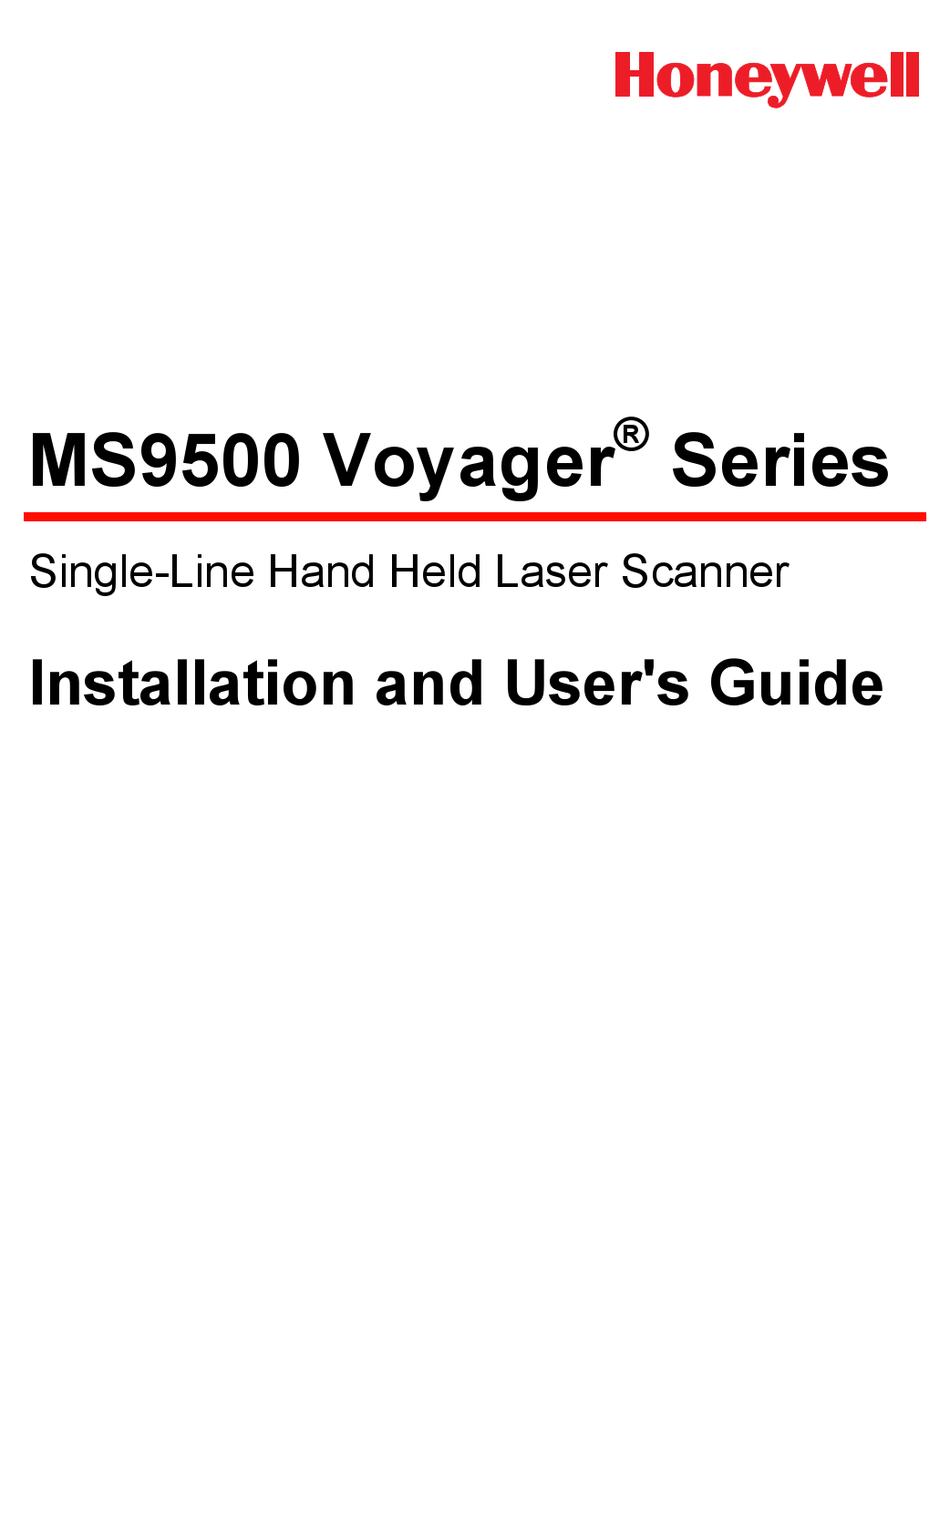 HONEYWELL MS9500 VOYAGER SERIES USER MANUAL Pdf Download | ManualsLib